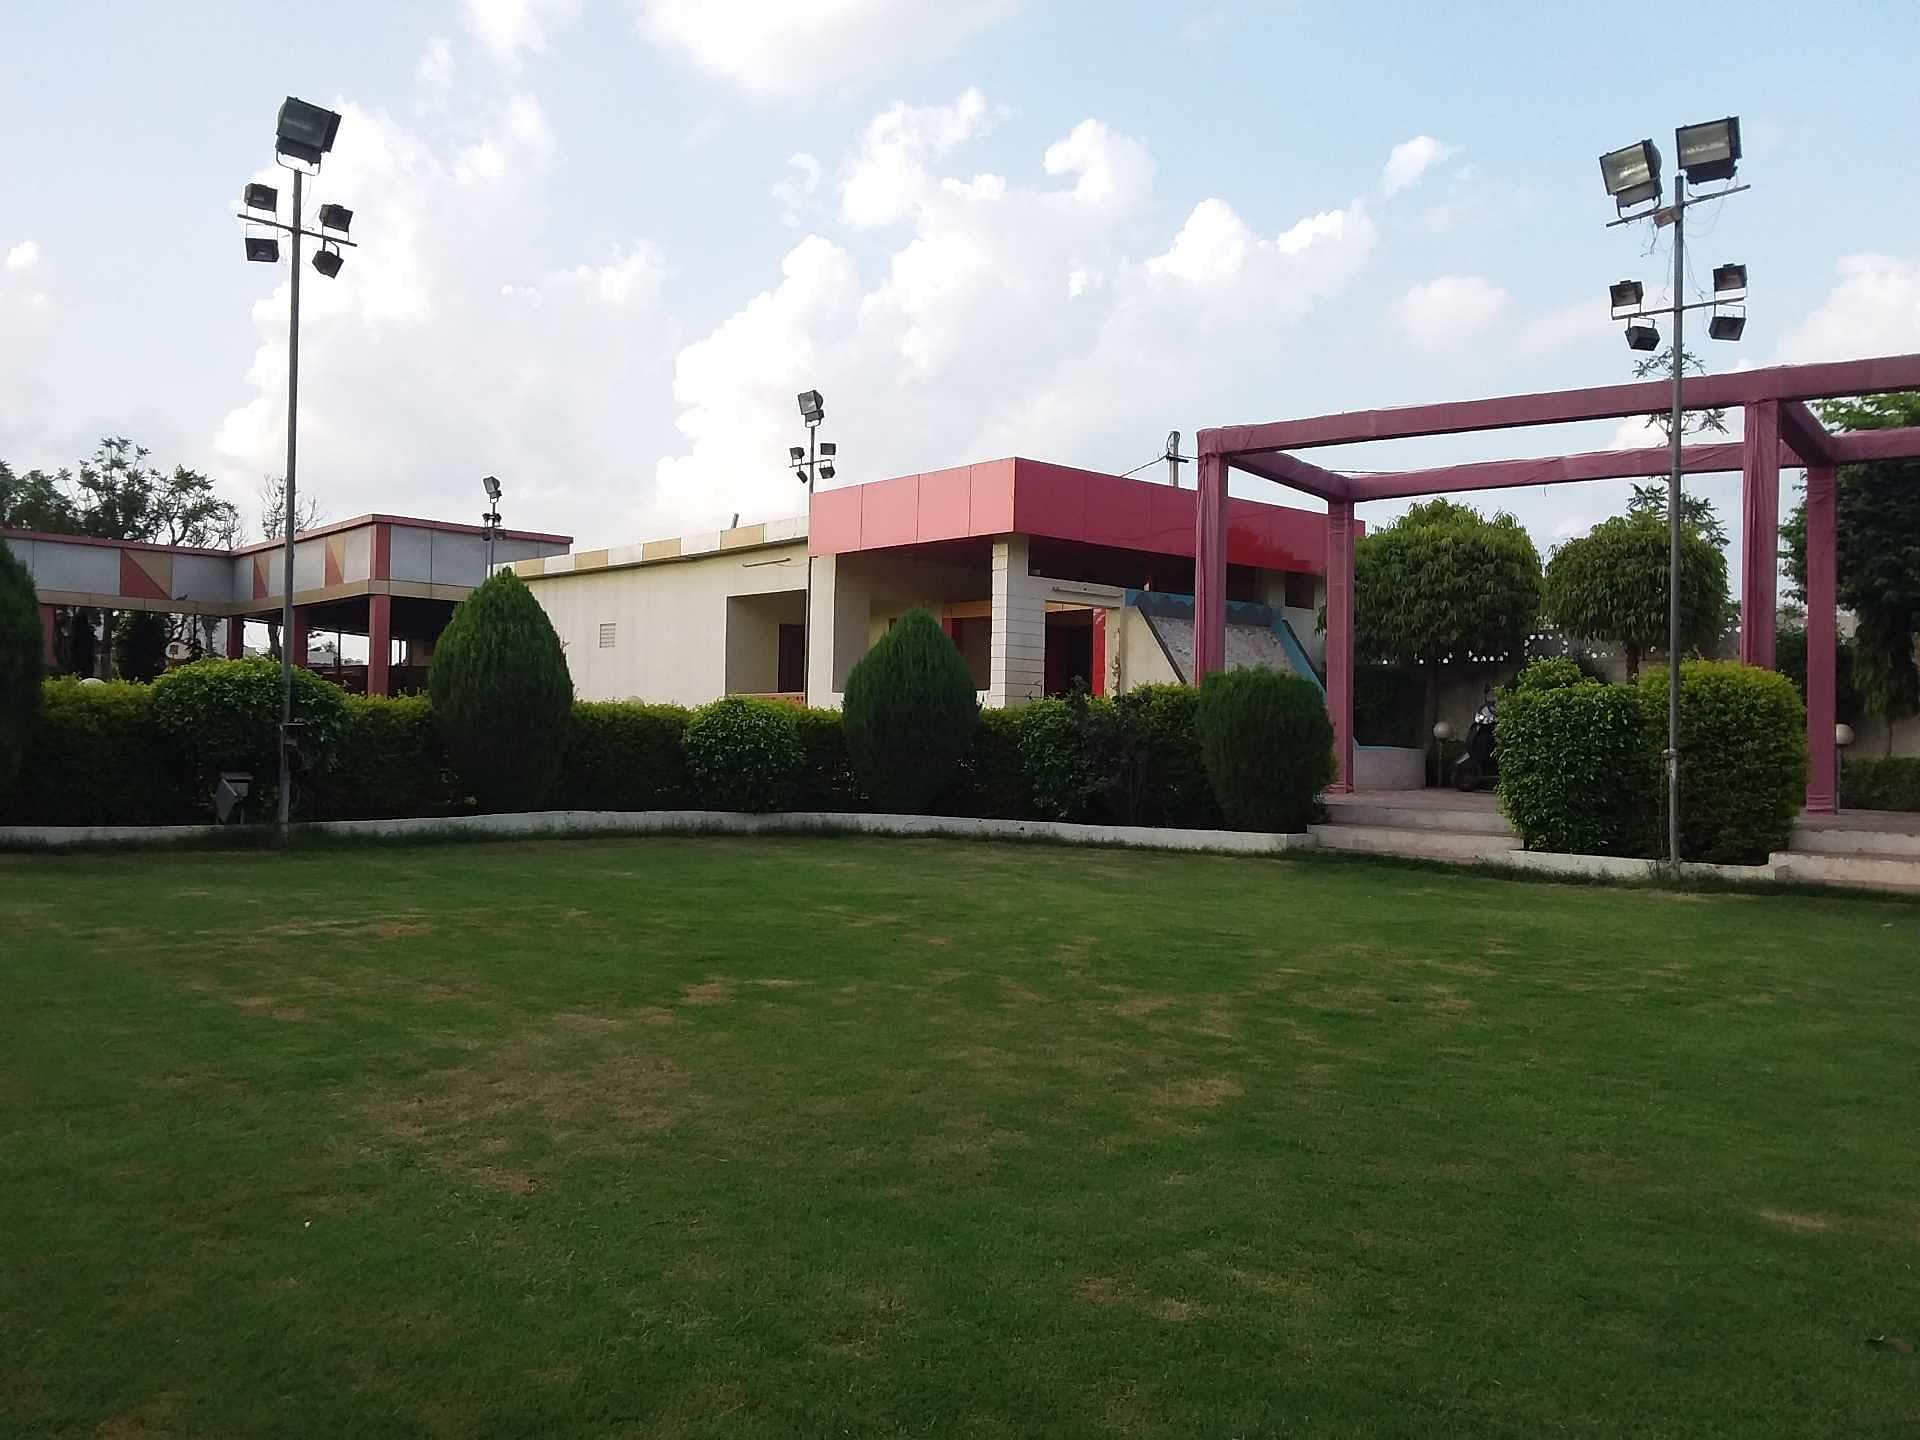 Evergreen Palace in Gajsinghpur, Jaipur